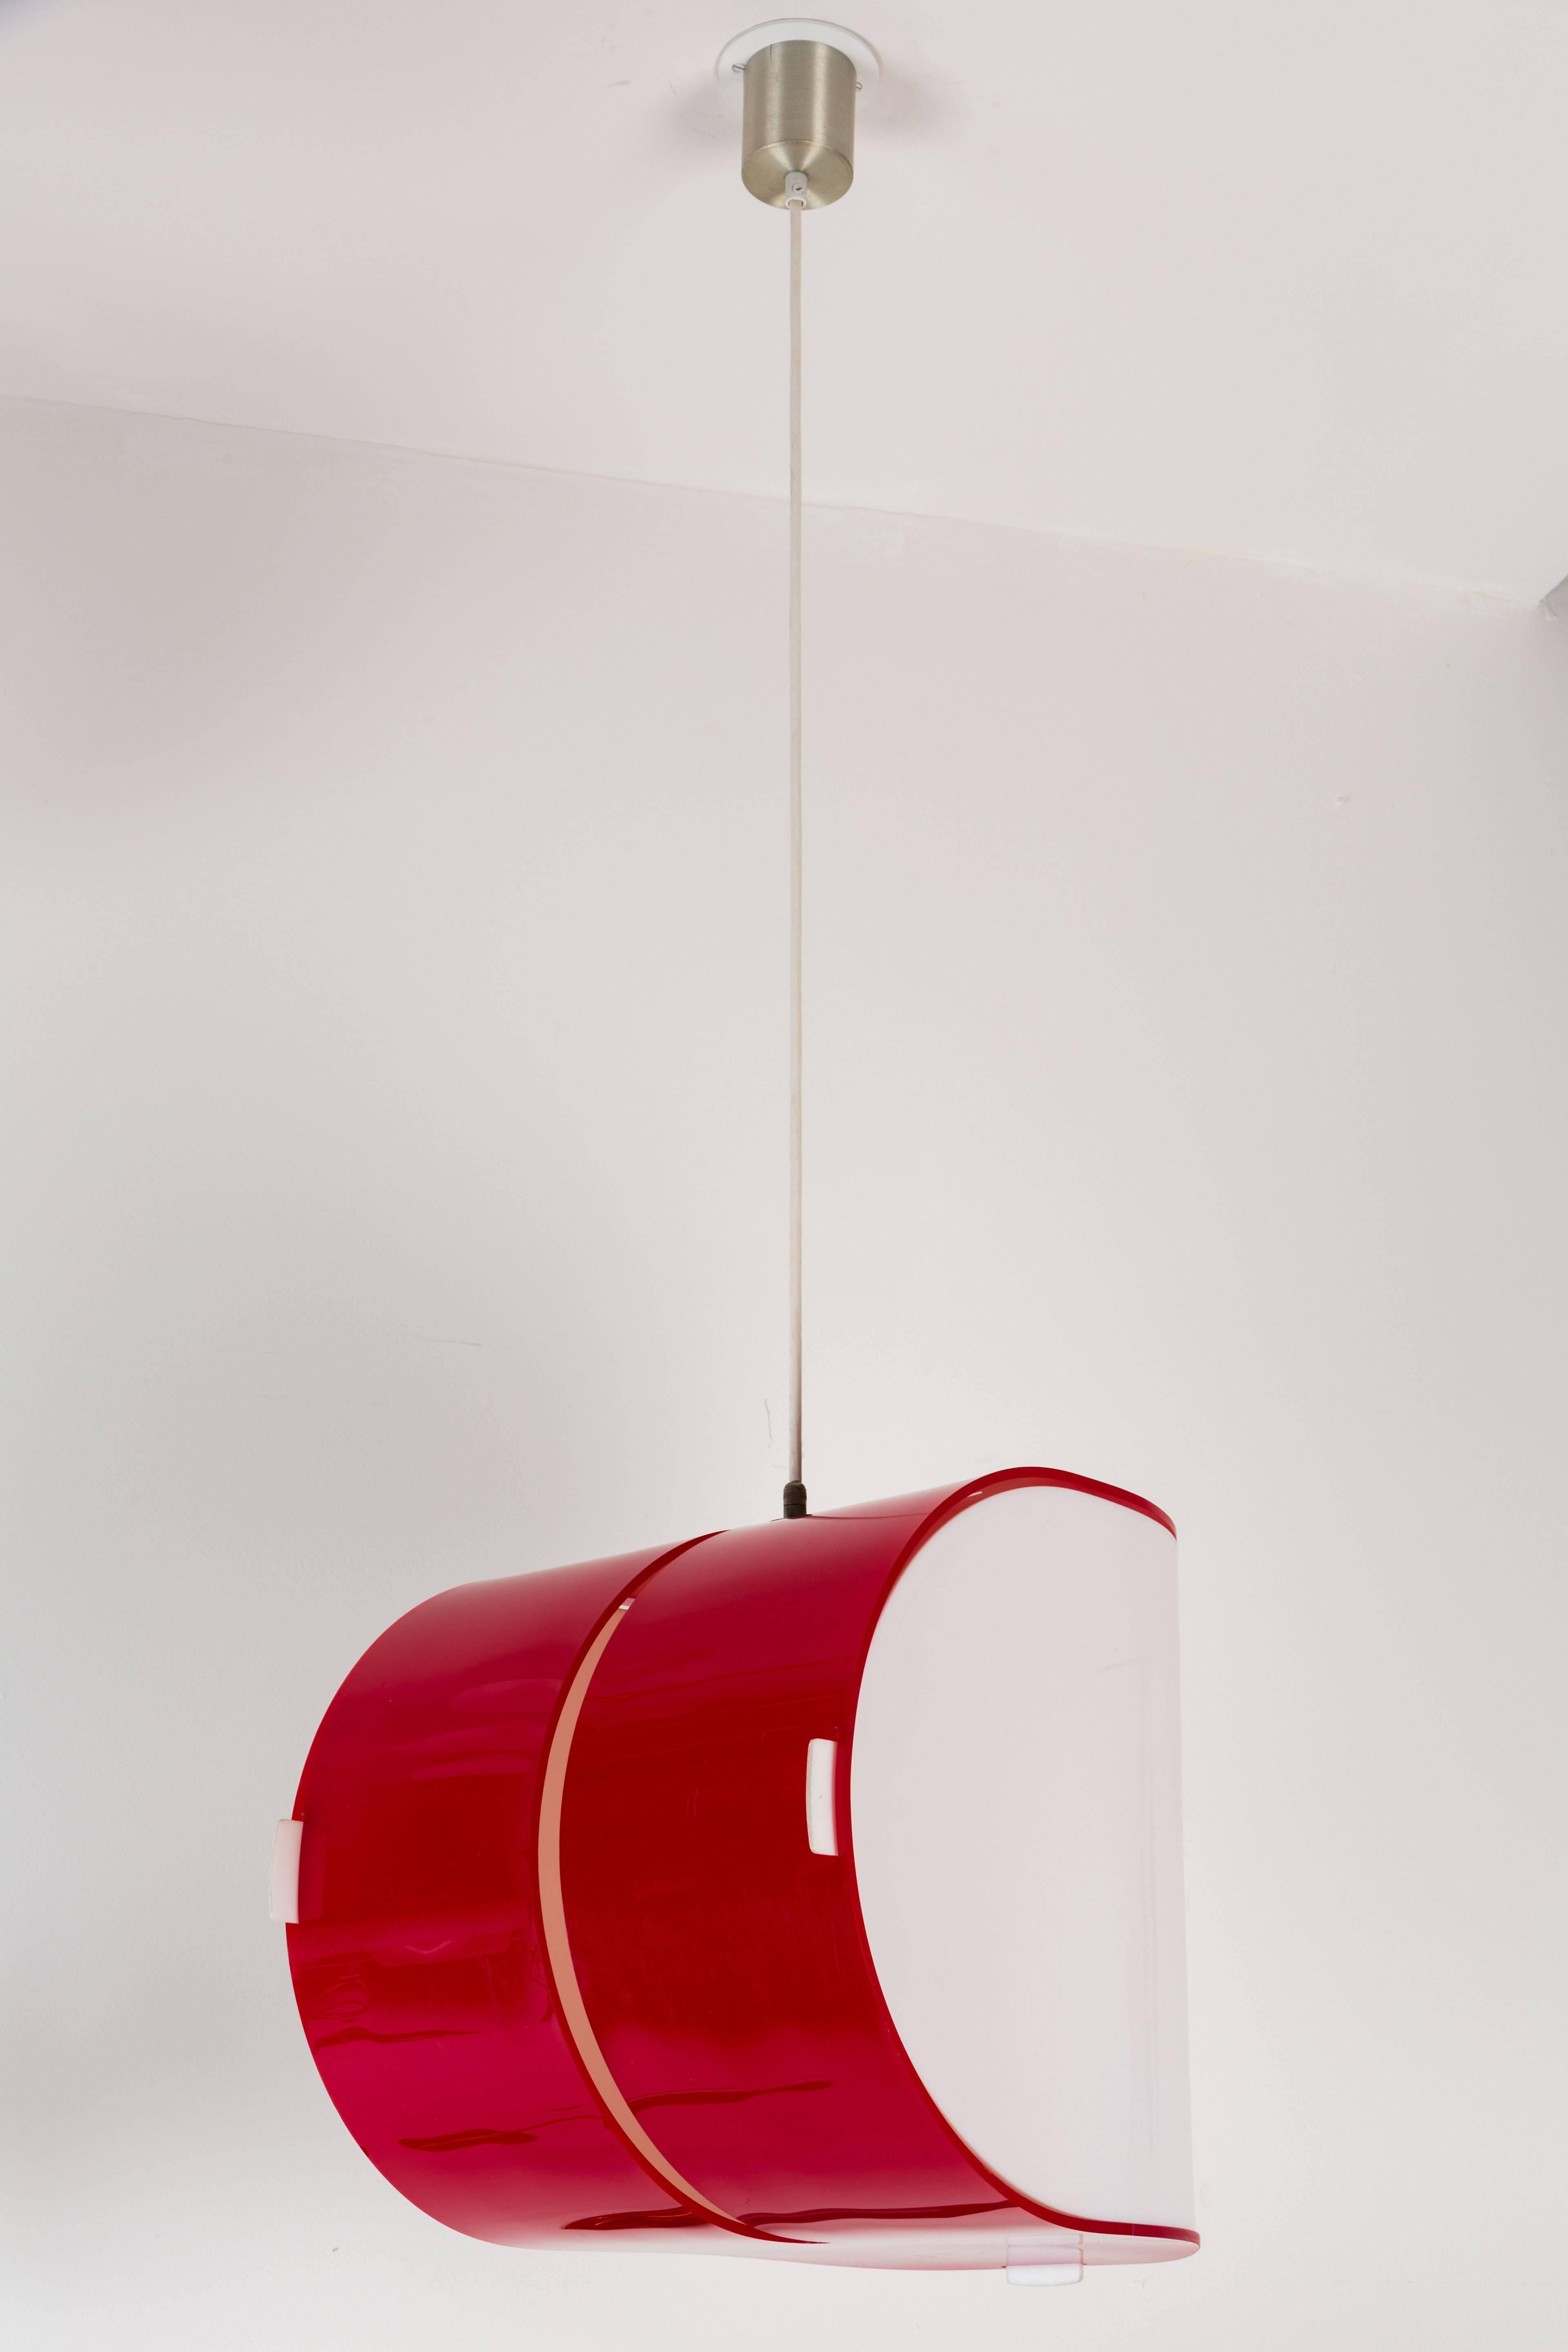 Mid-20th Century Rare Model 4065 Hanging Lamp by Gerd Lange for Kartell